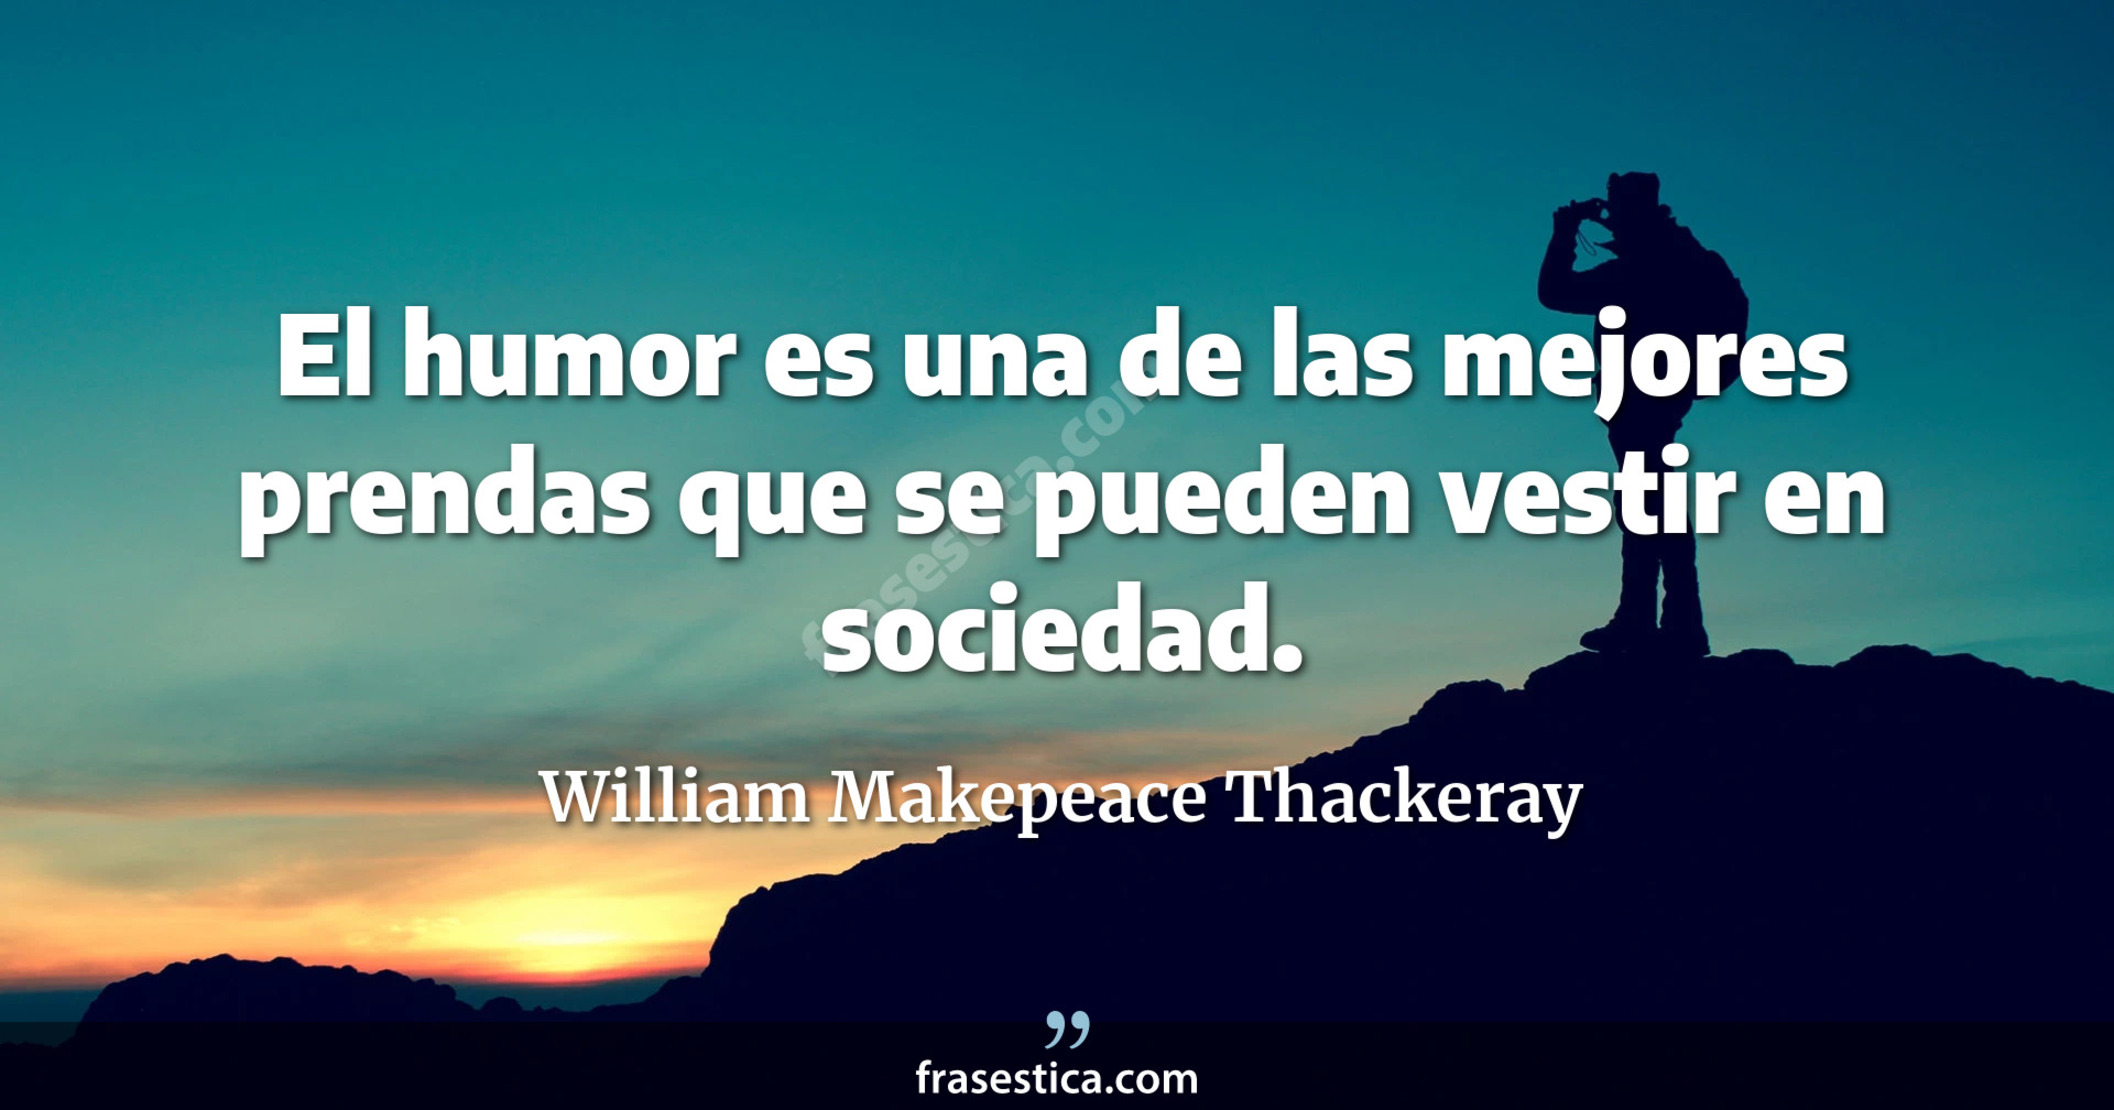 El humor es una de las mejores prendas que se pueden vestir en sociedad. - William Makepeace Thackeray